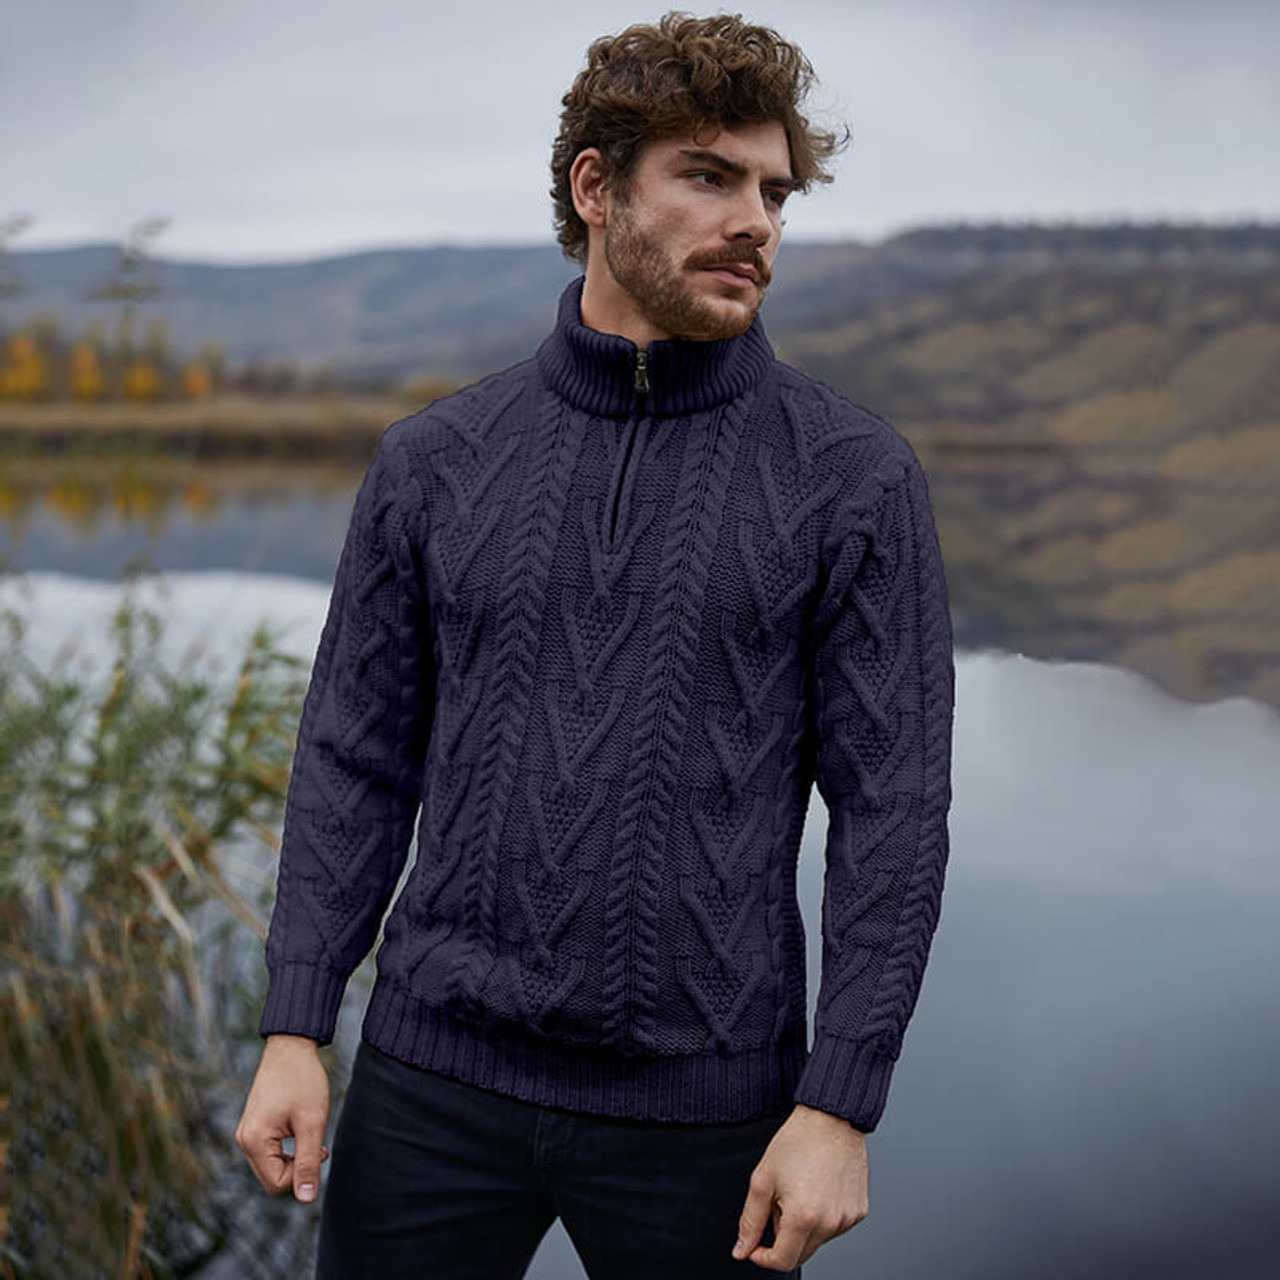 SAOL Irish Sweater for Men's Made of 100% Merino Wool -Ireland